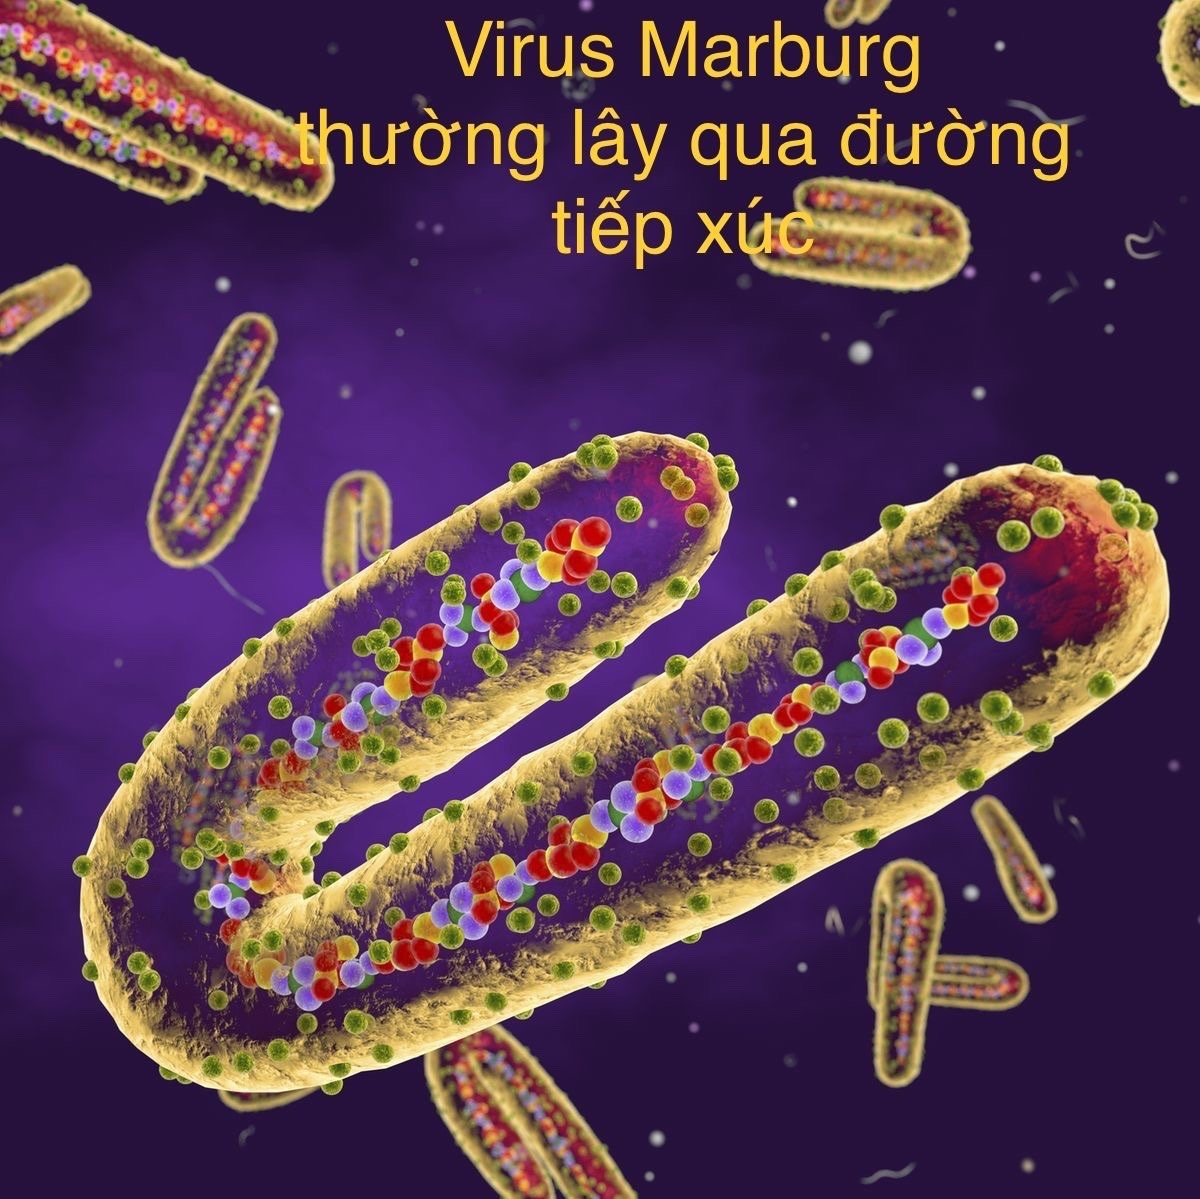 Hình ảnh minh họa mô phỏng virus Marburg. Ảnh đồ họa: Hương Giang